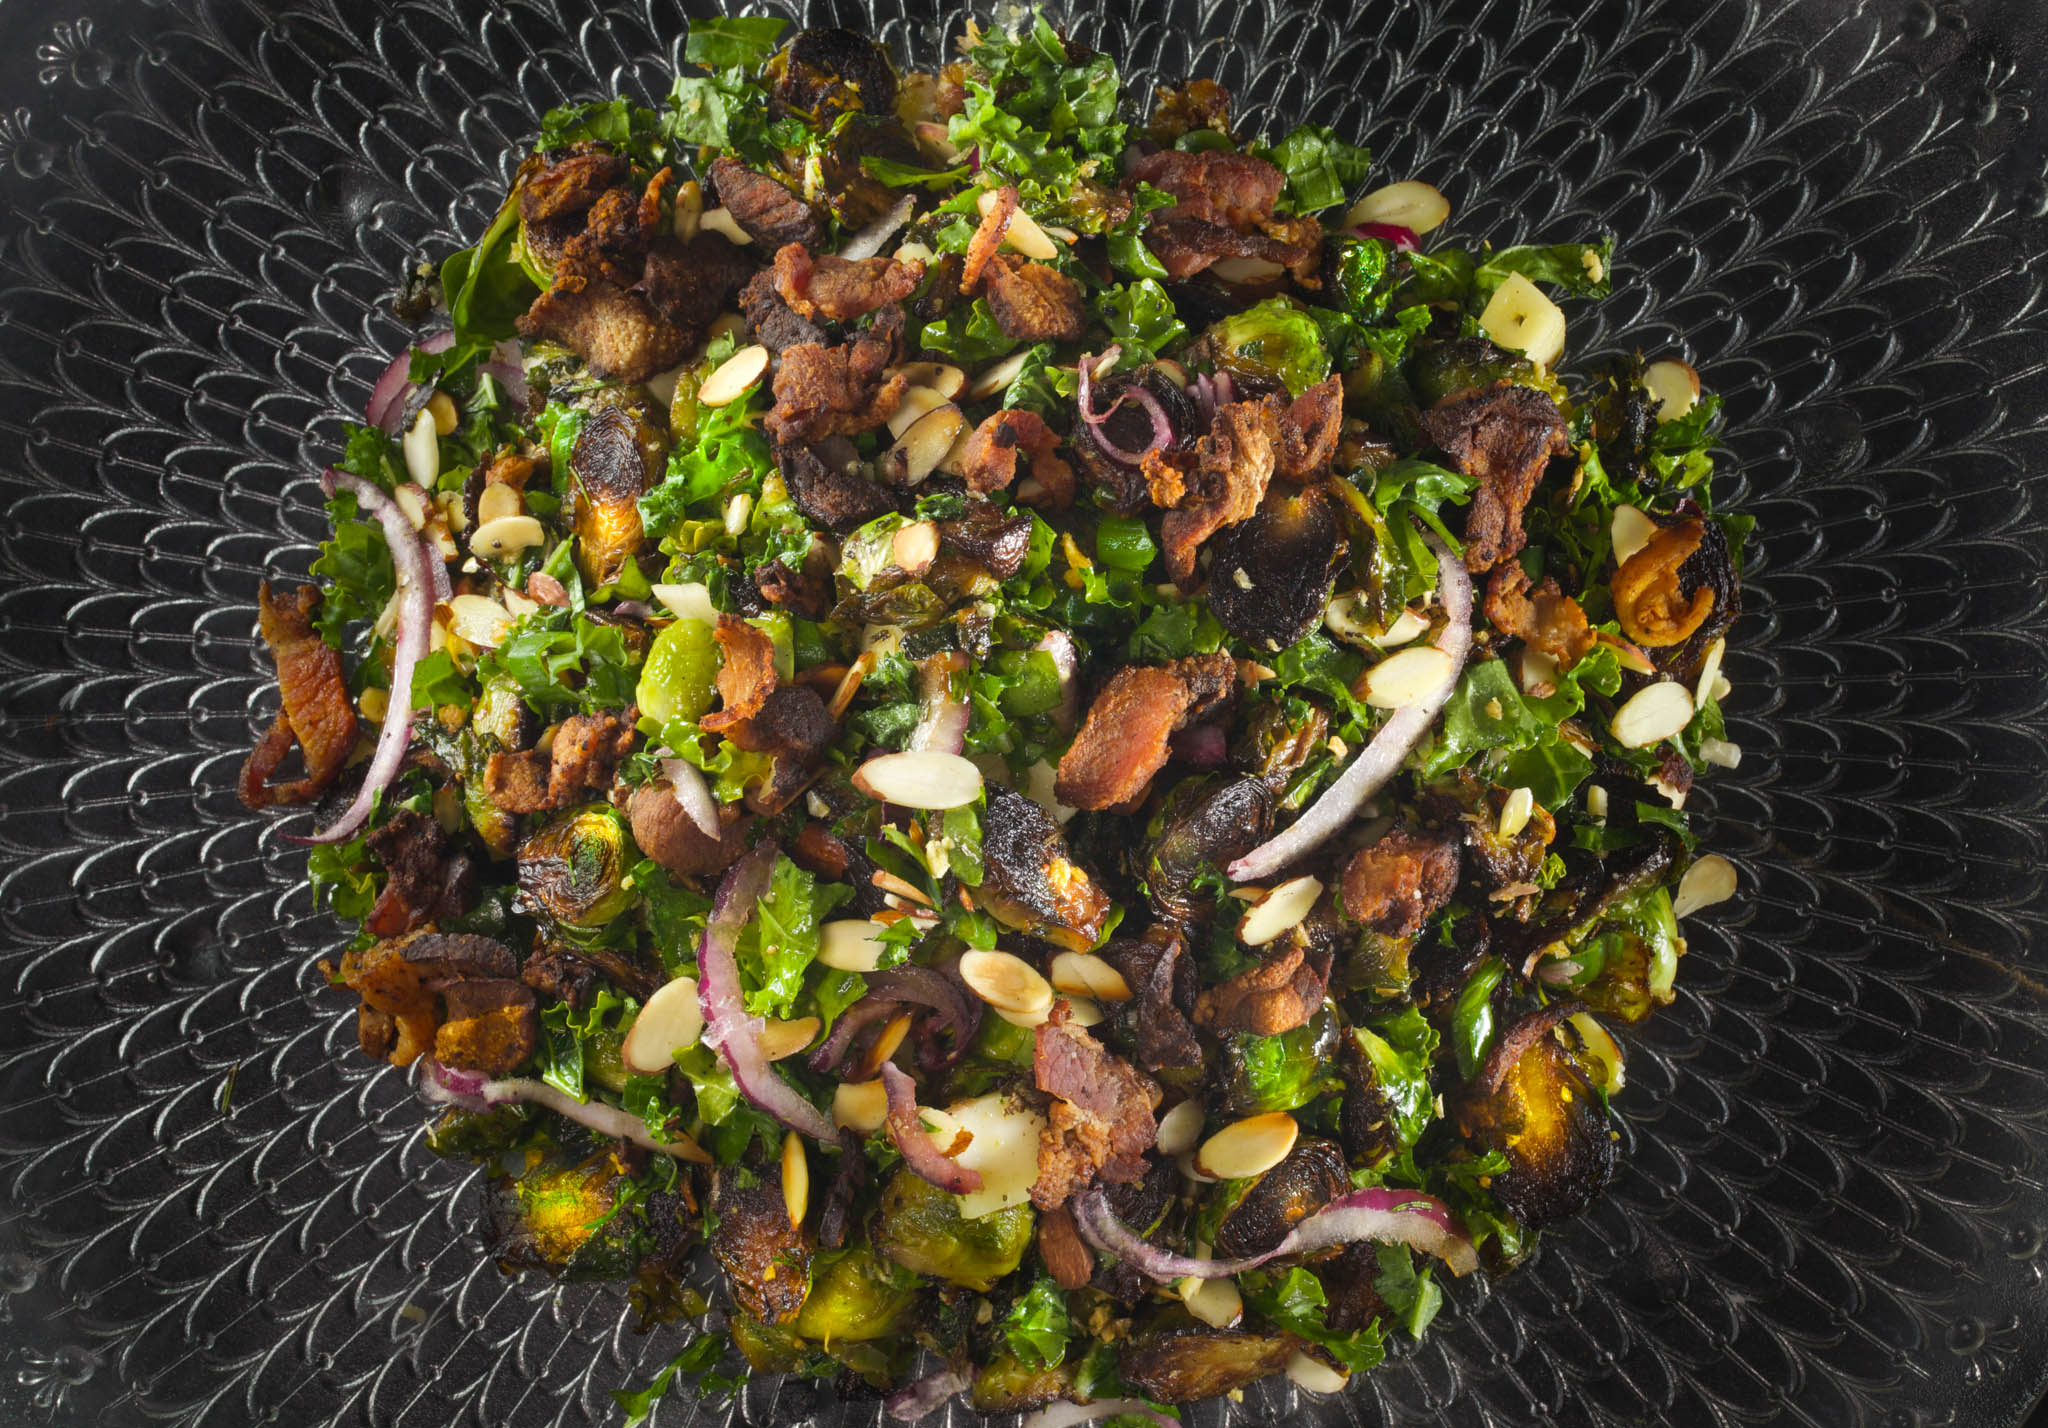 Blackened Brussels Salad brings out deep Cajun flavors.